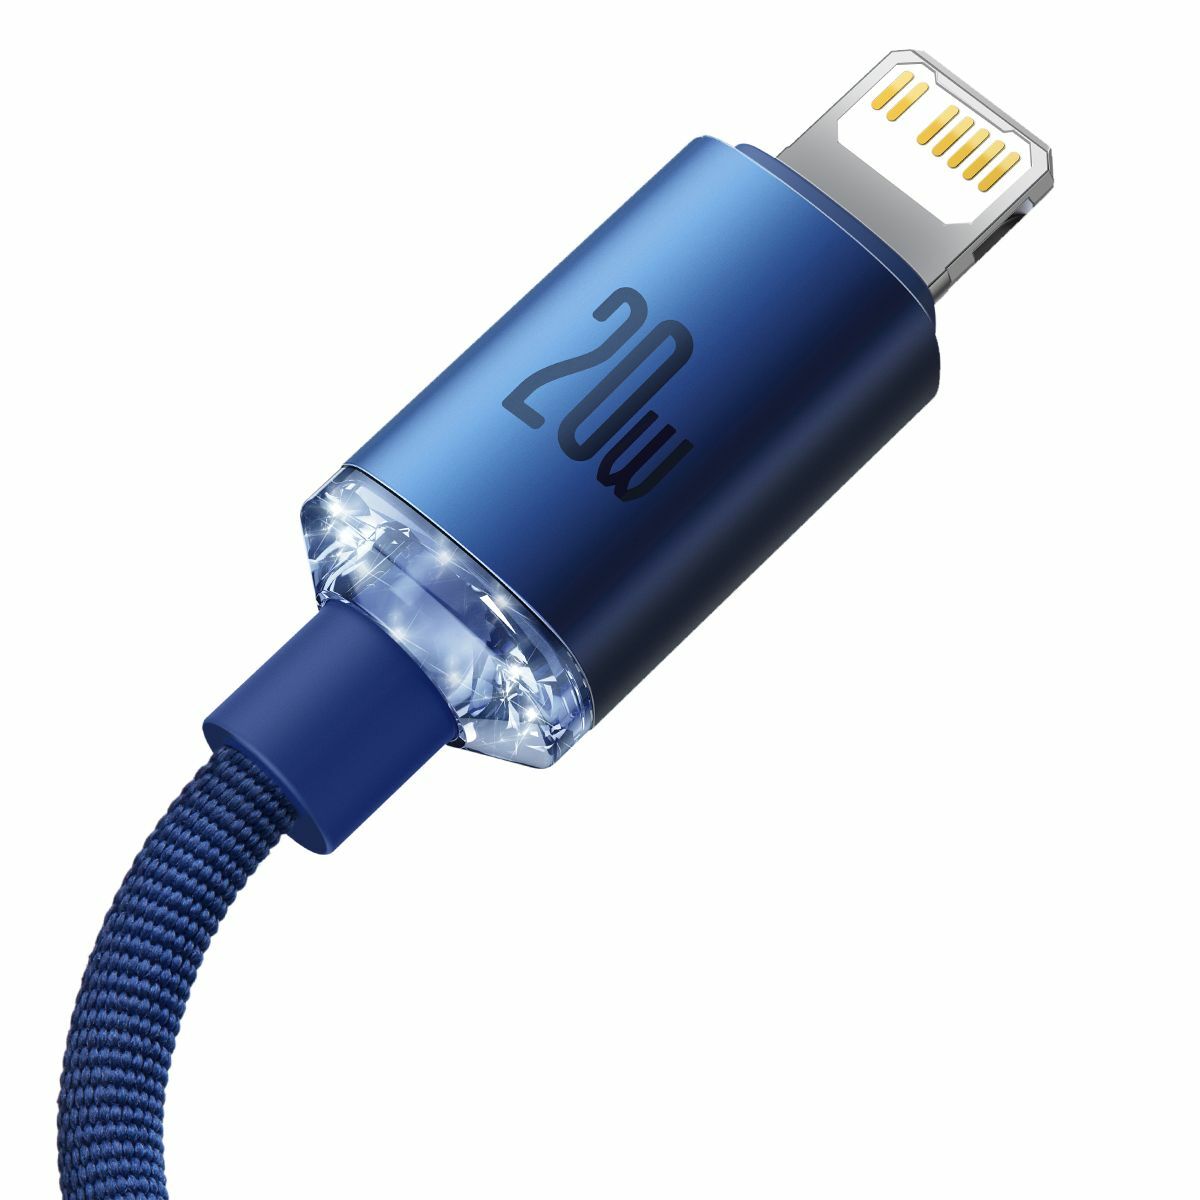 Baseus Type-C - Lightning kábel, Crystal Shine Series gyors töltés, adatkábel 20W, 2m, kék (CAJY000303)